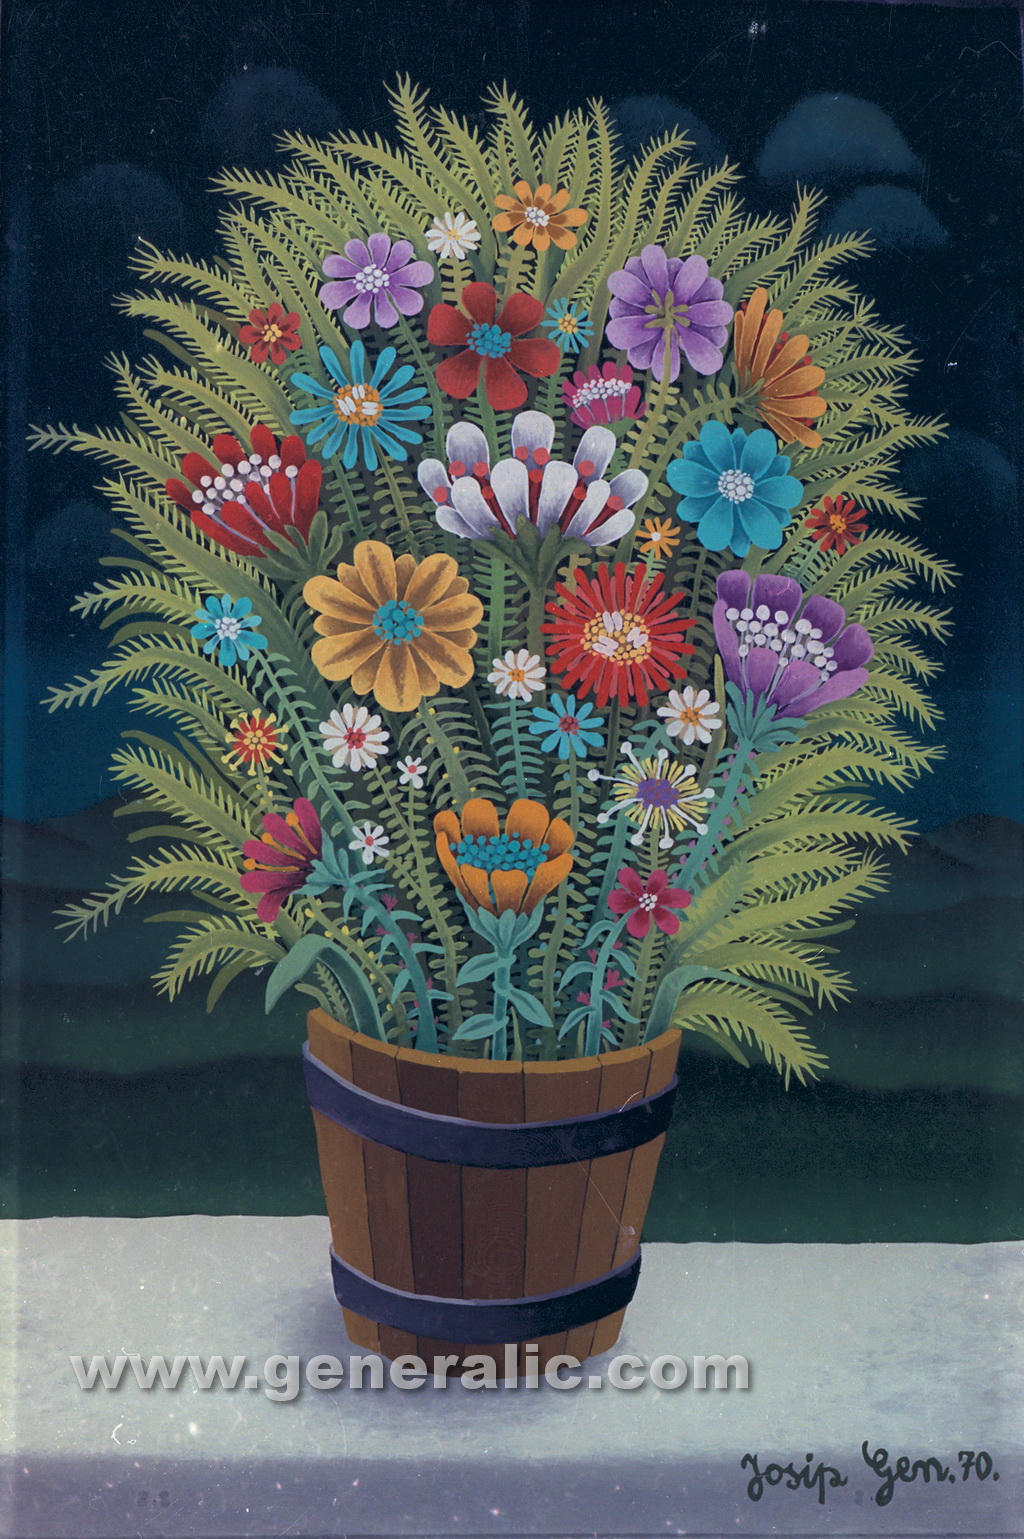 Josip Generalic, 1971, Flowers in a bucket, oil on glass